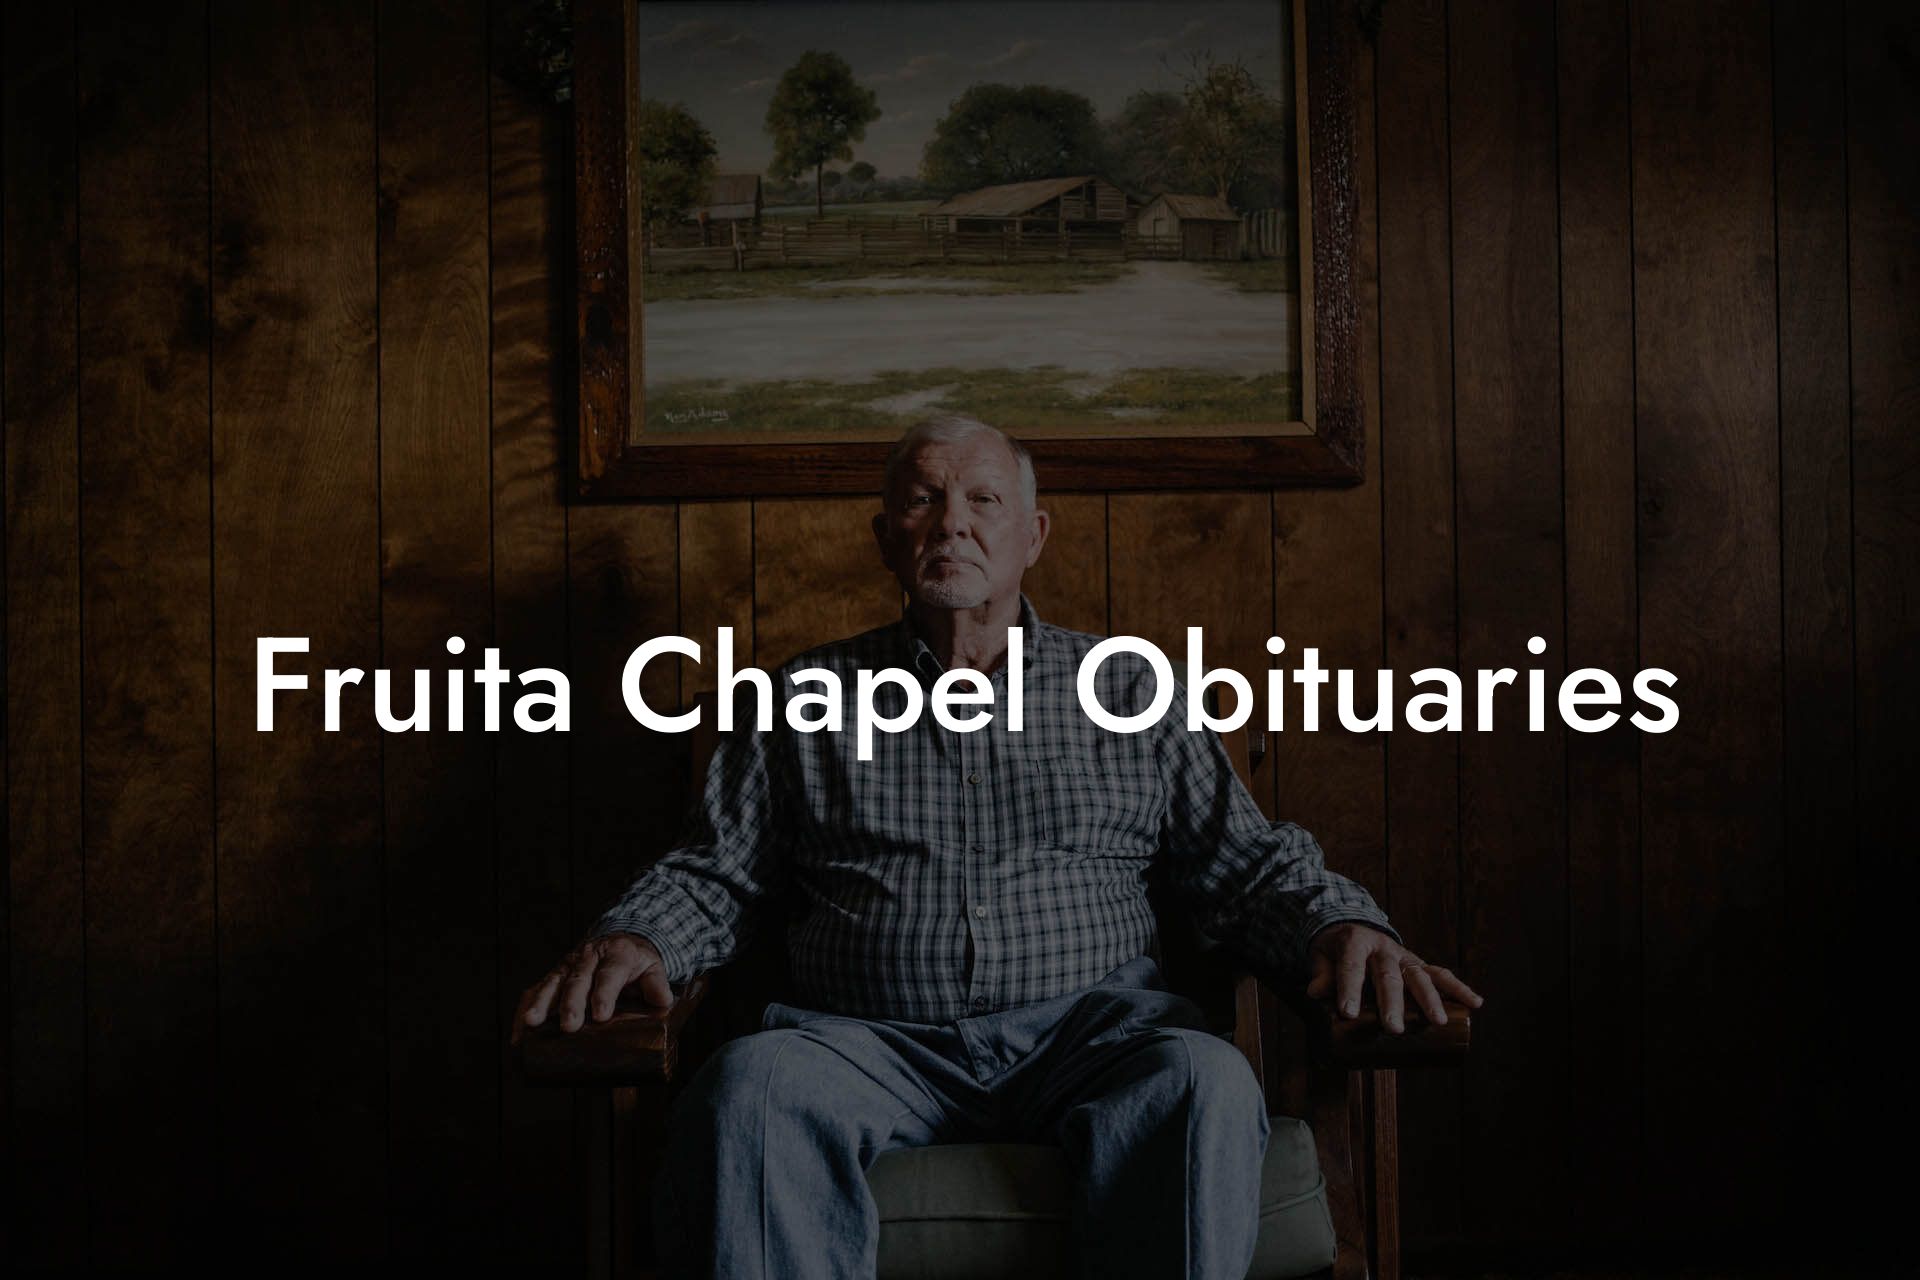 Fruita Chapel Obituaries